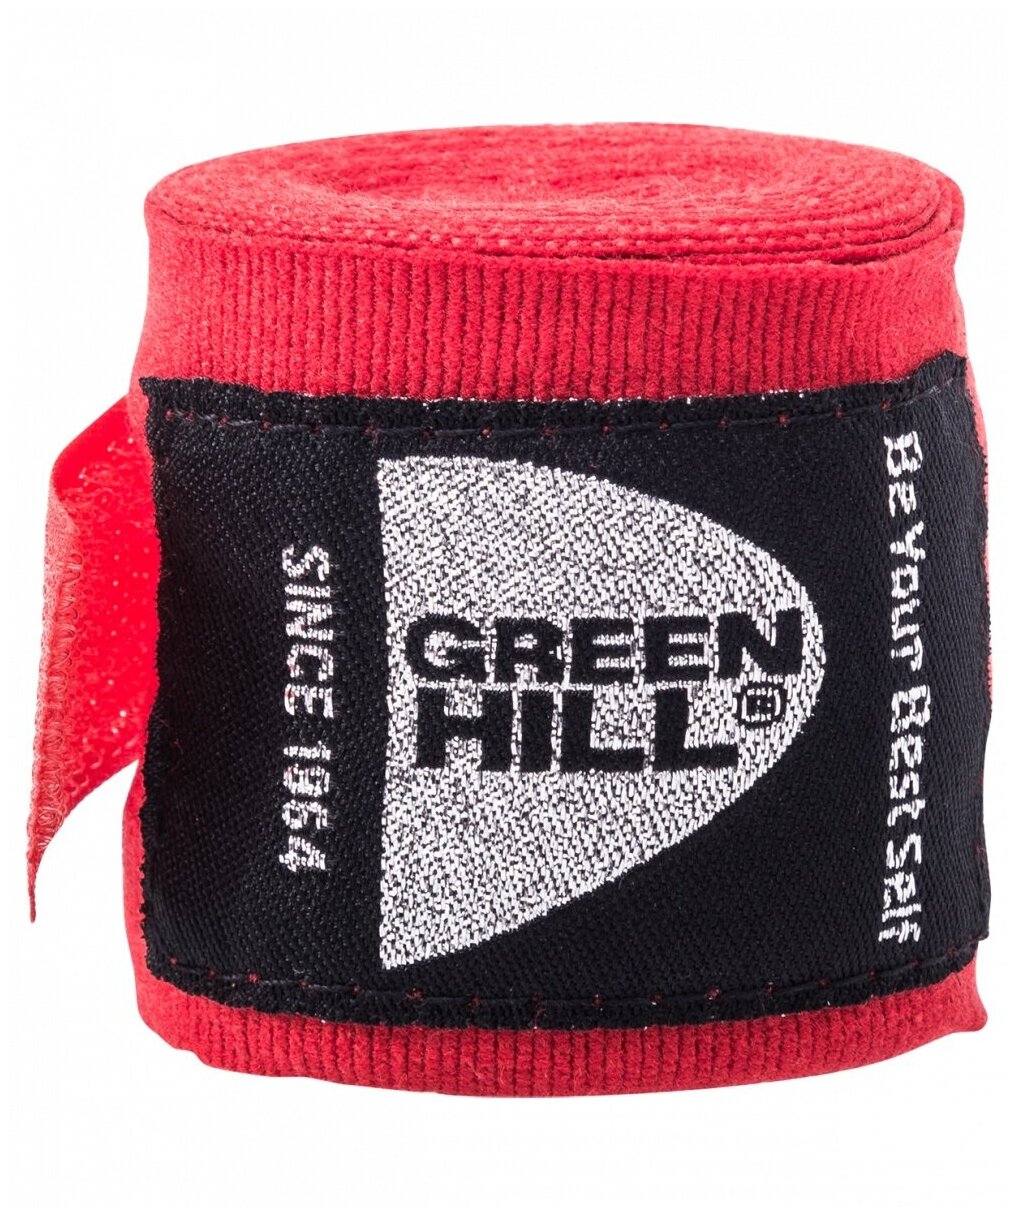 Бинт боксерский Green Hill BP-6232c 3,5м красный